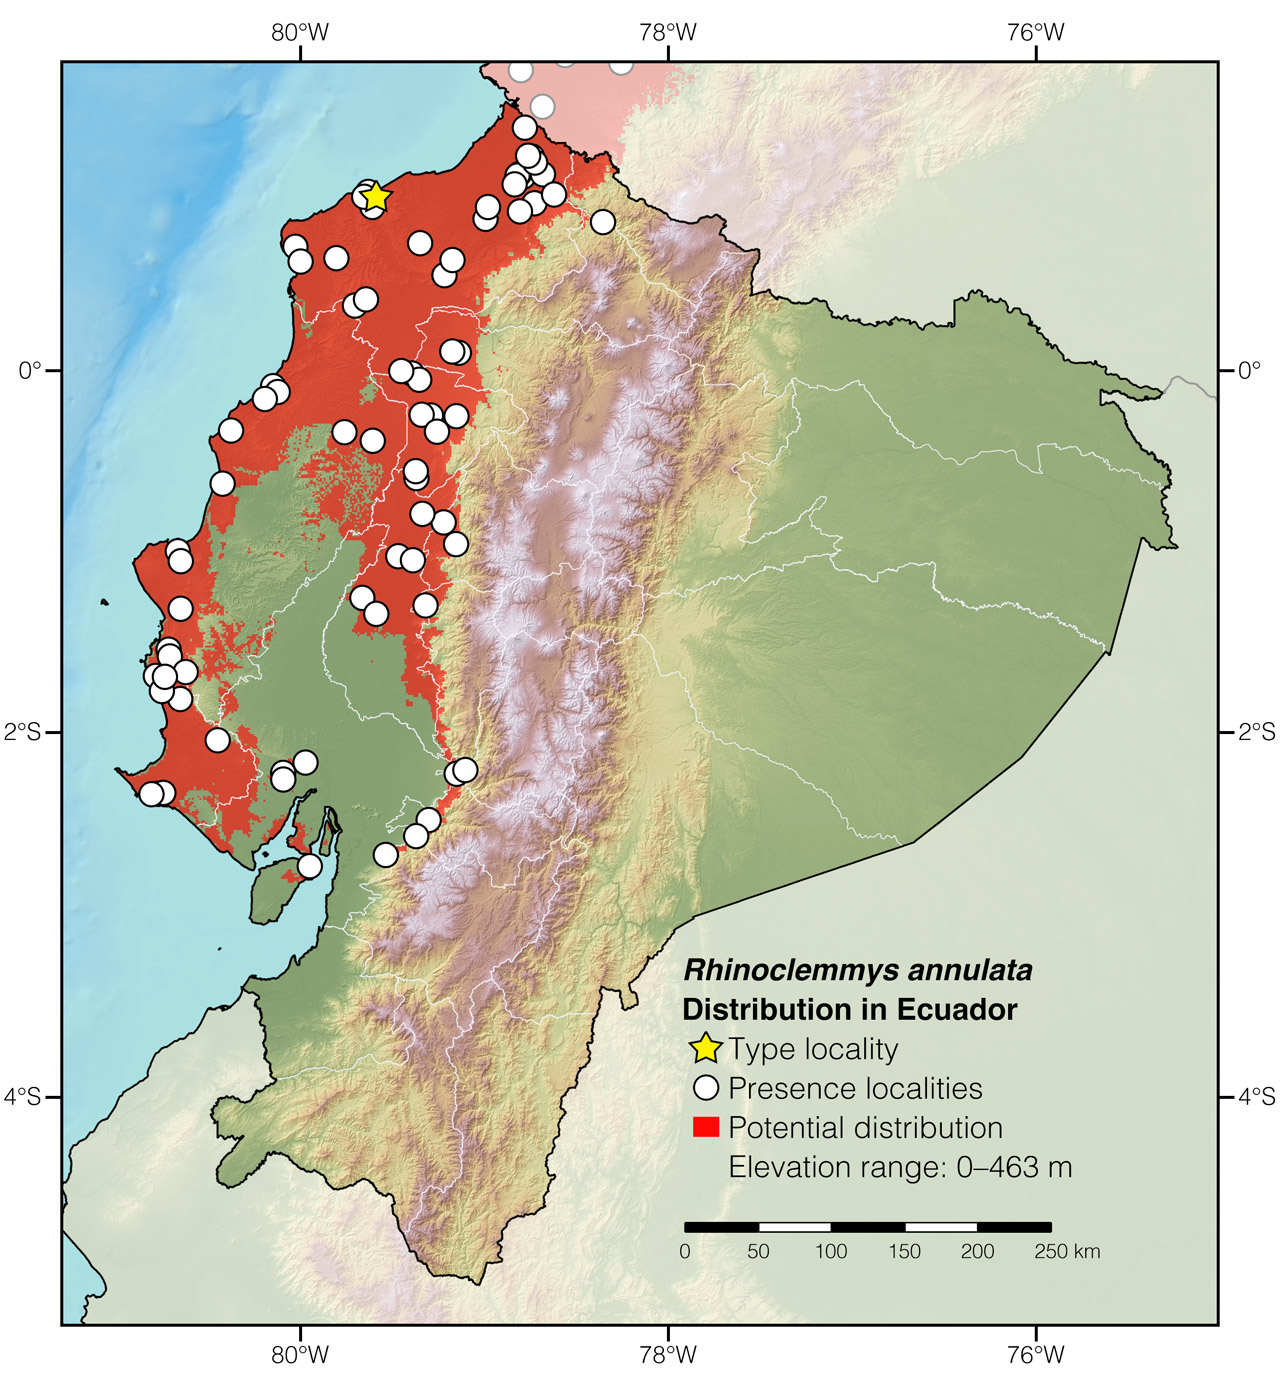 Distribution of Rhinoclemmys annulata in Ecuador